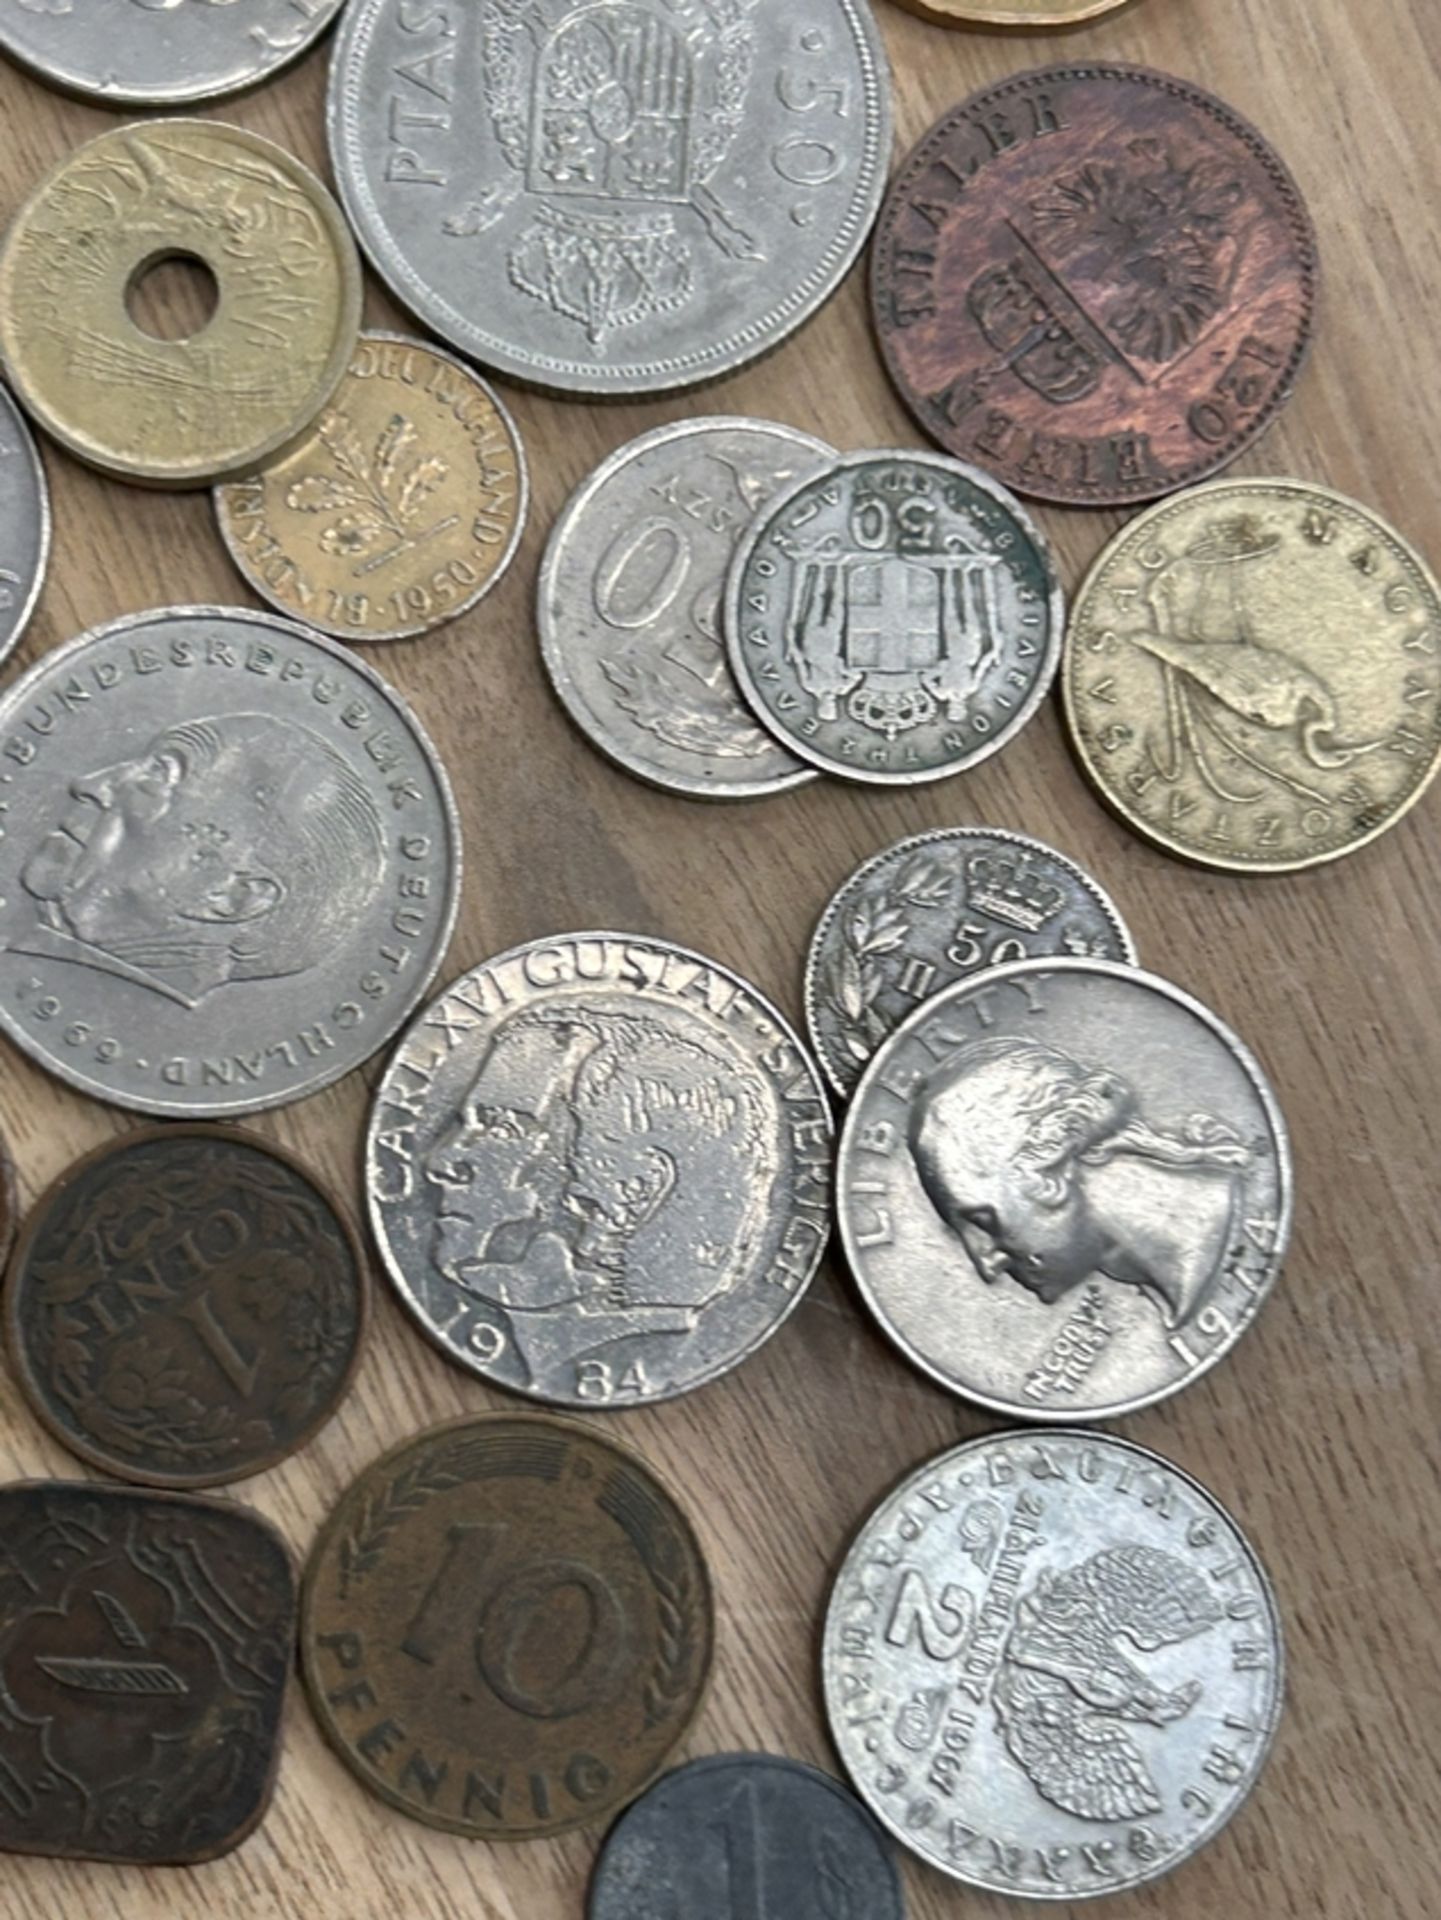 75xdiv. Kleinmünzen, tw. älter, unsortiert, ungeprüft, dabei einige alte chinesische Münzen? - Bild 8 aus 21